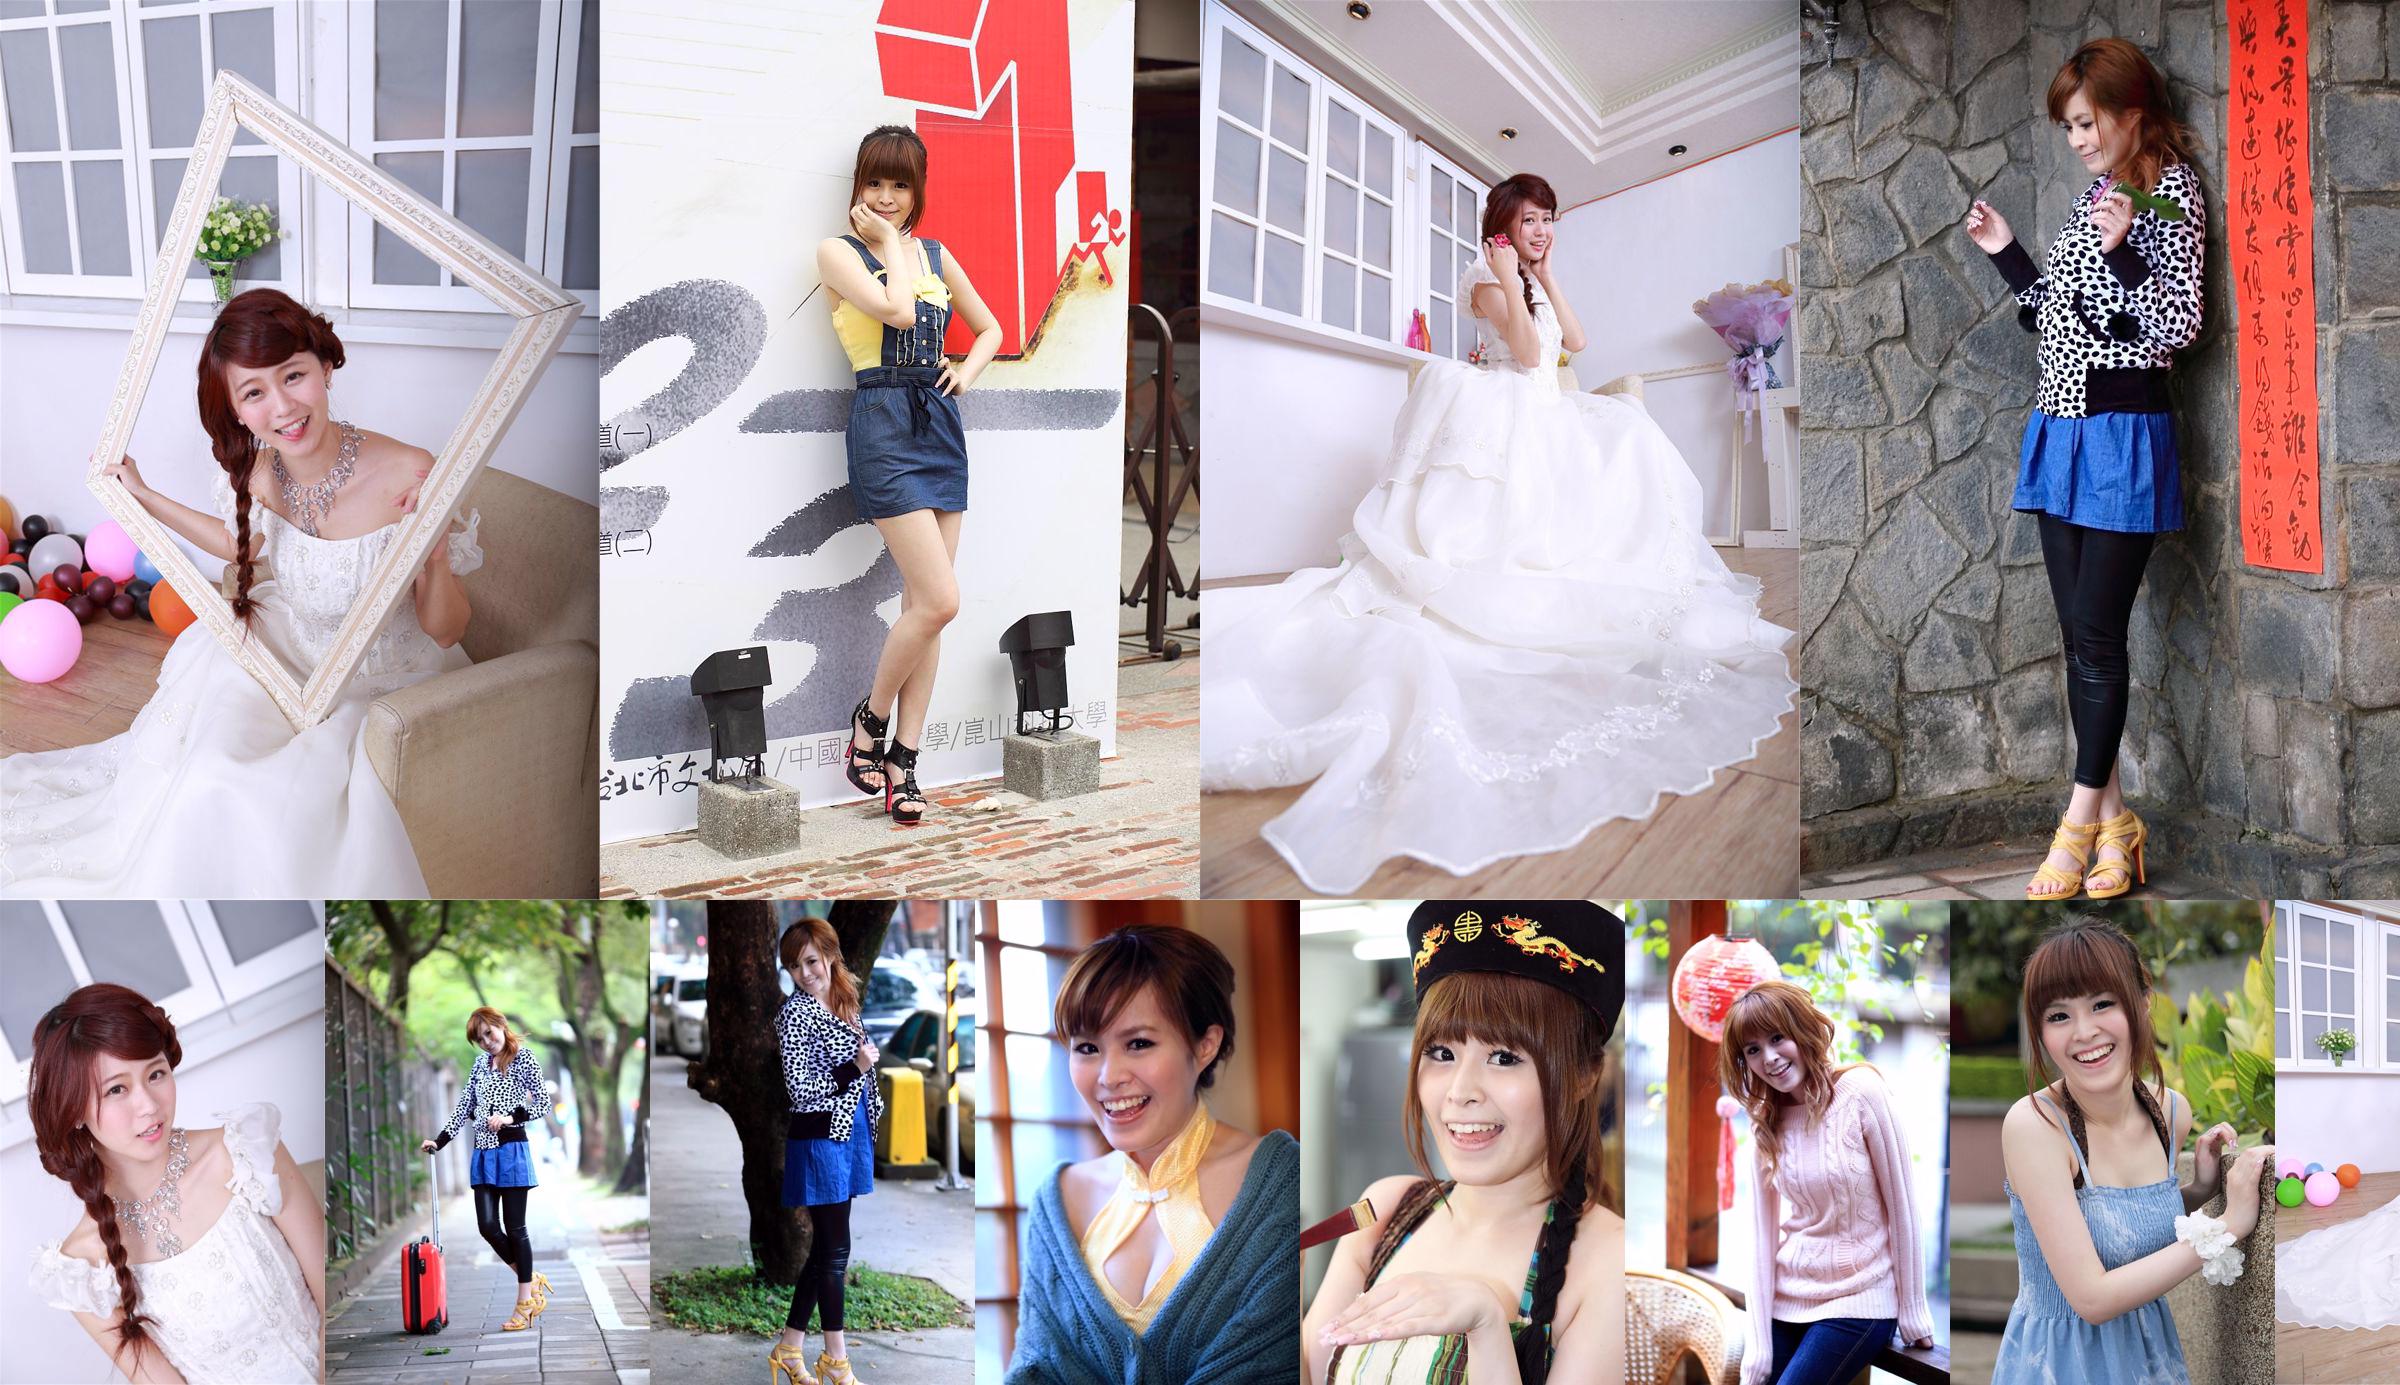 Taiwan's innocent girl Bai Bai/Li Yixuan "Mechanical and Electrical Girls' Wedding Studio Shooting" No.1ab81e Page 1